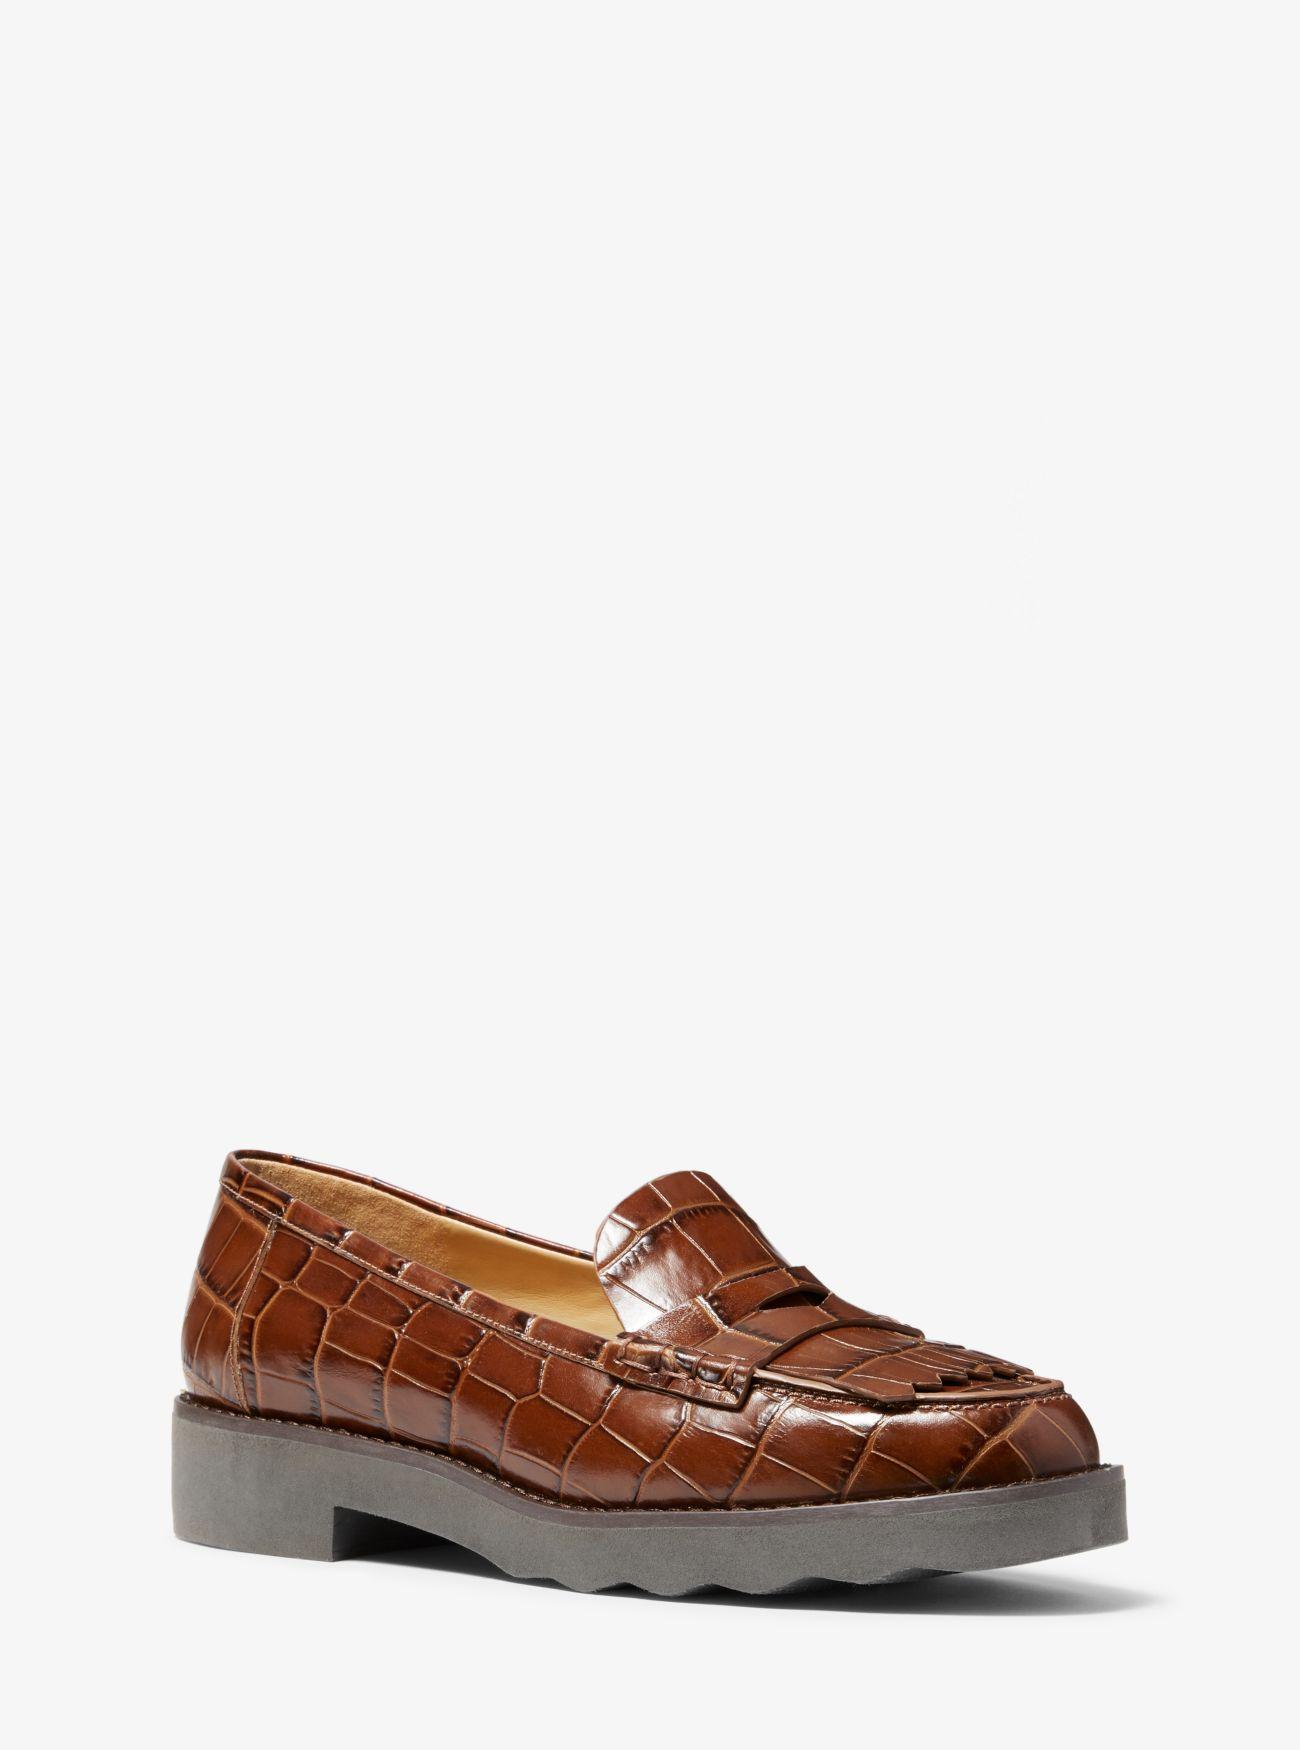 michael kors crocodile shoes